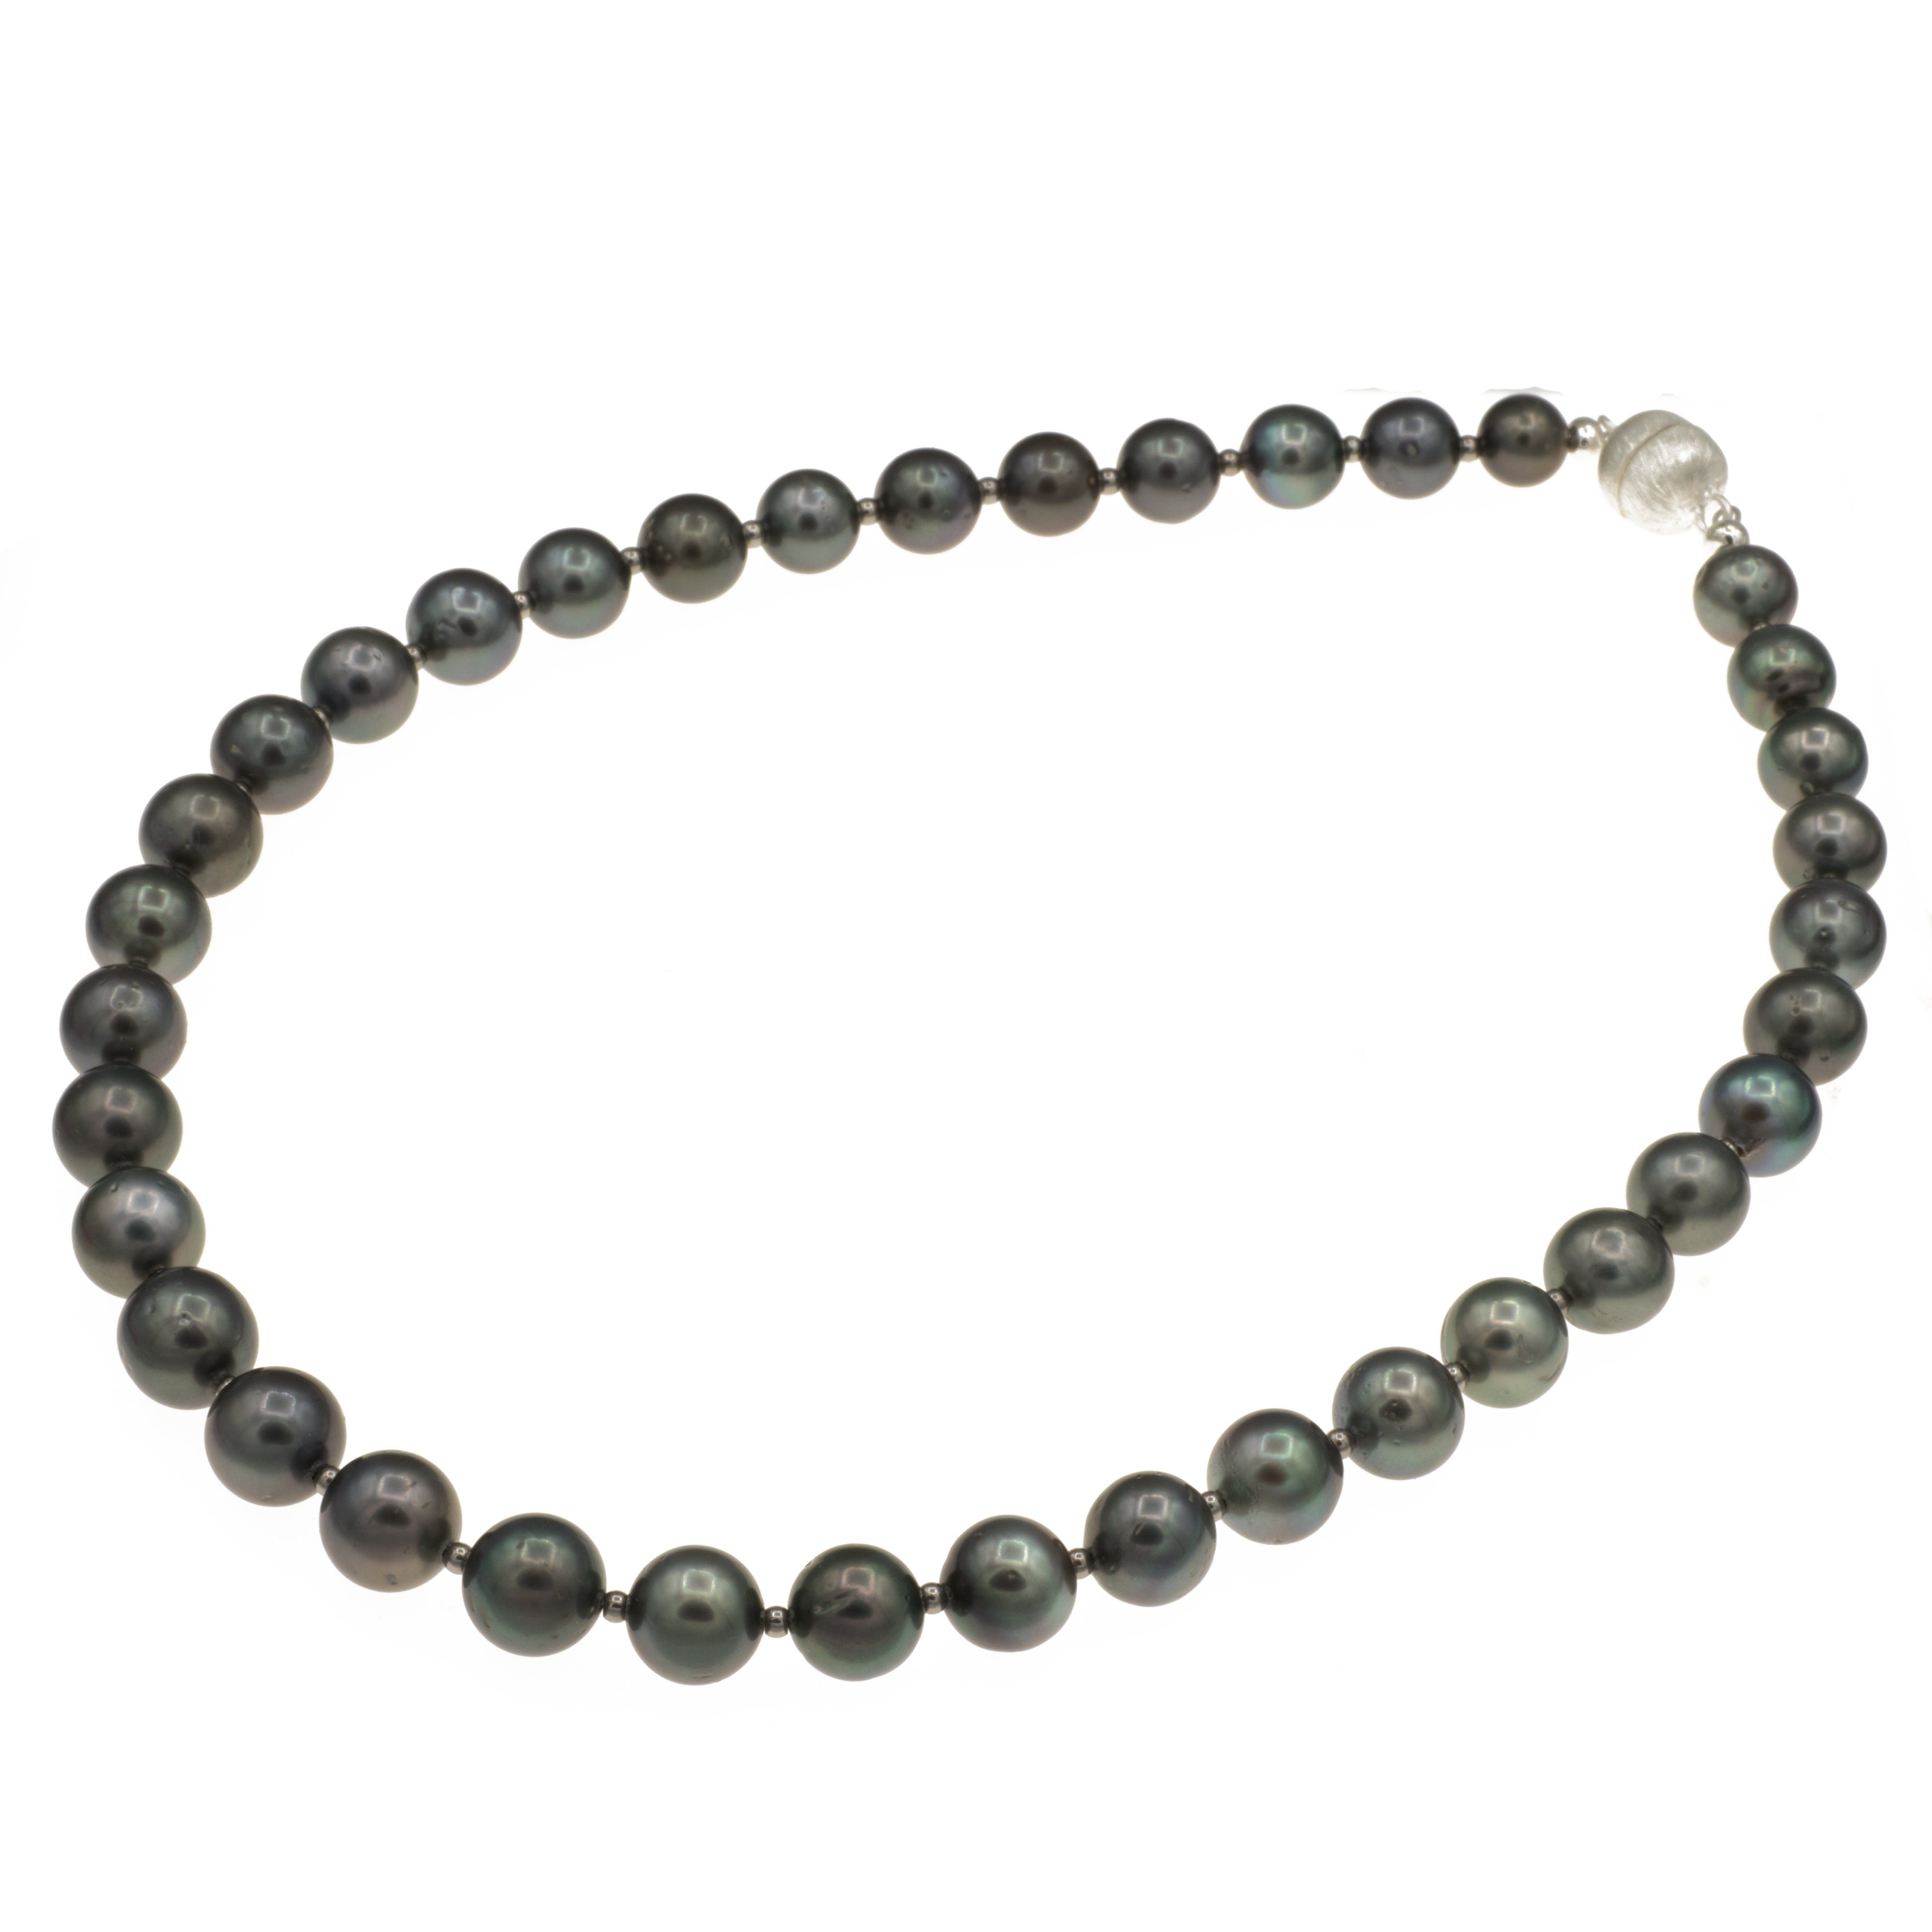 Bella Carina Perlenkette Tahiti Perlen Kette rund Perlen 10,5 - 9 mm Durchmesser 44 cm Länge, echte Tahiti Perlen, Einzelstück